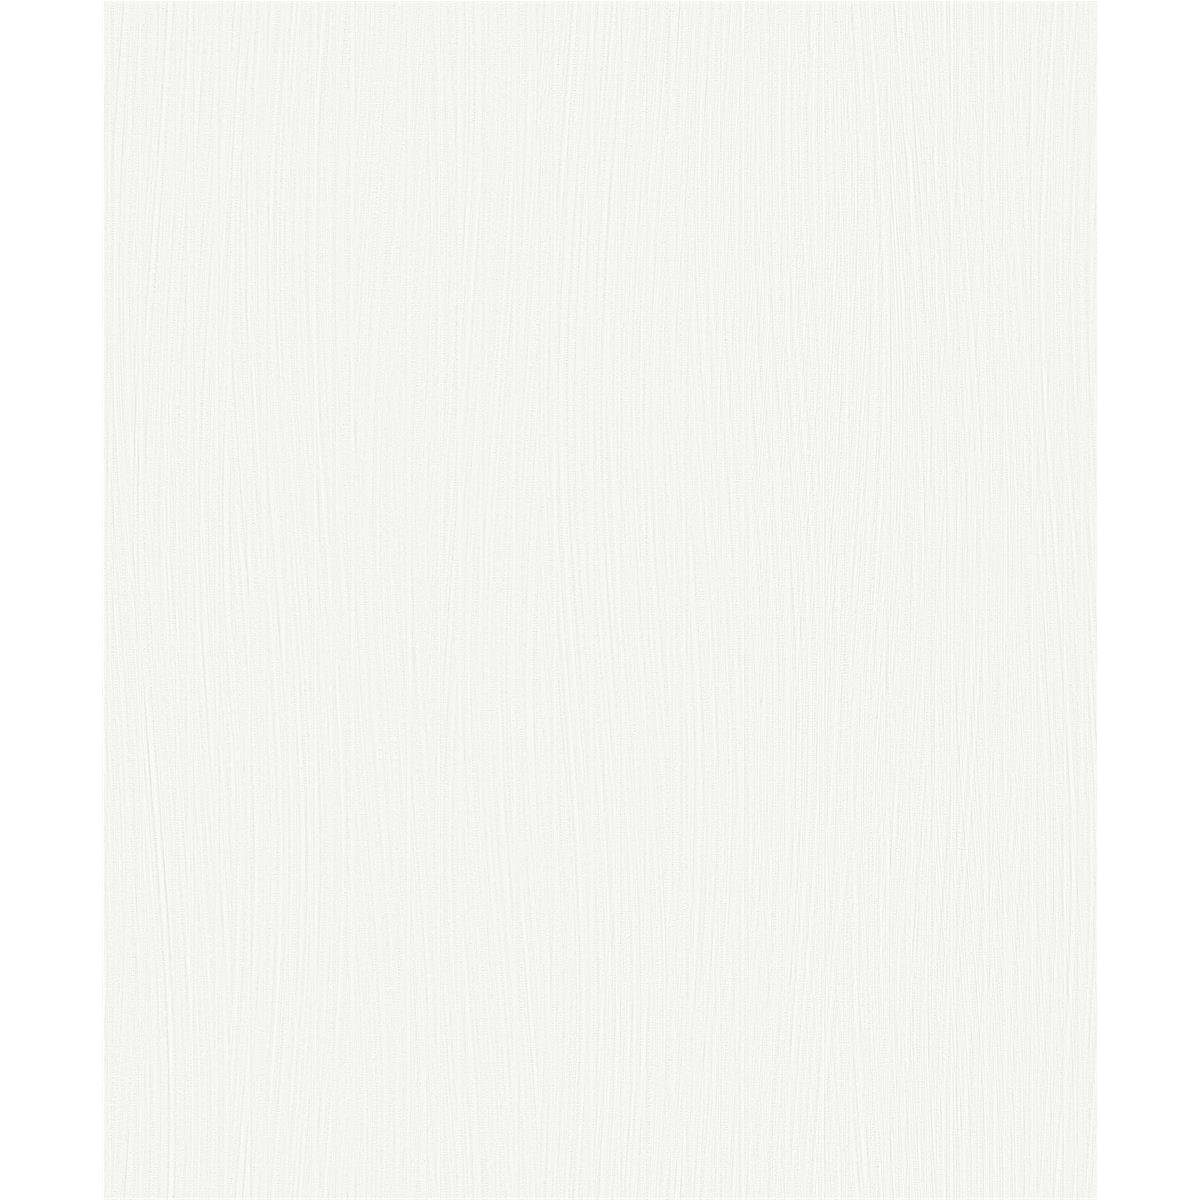 Erismann Vliestapete Erismann Vliestapete Fashion for walls 3 - 10028-01, weiß, trocken abziehbar, schwer entflammbar, waschbeständig, Lichtbeständig